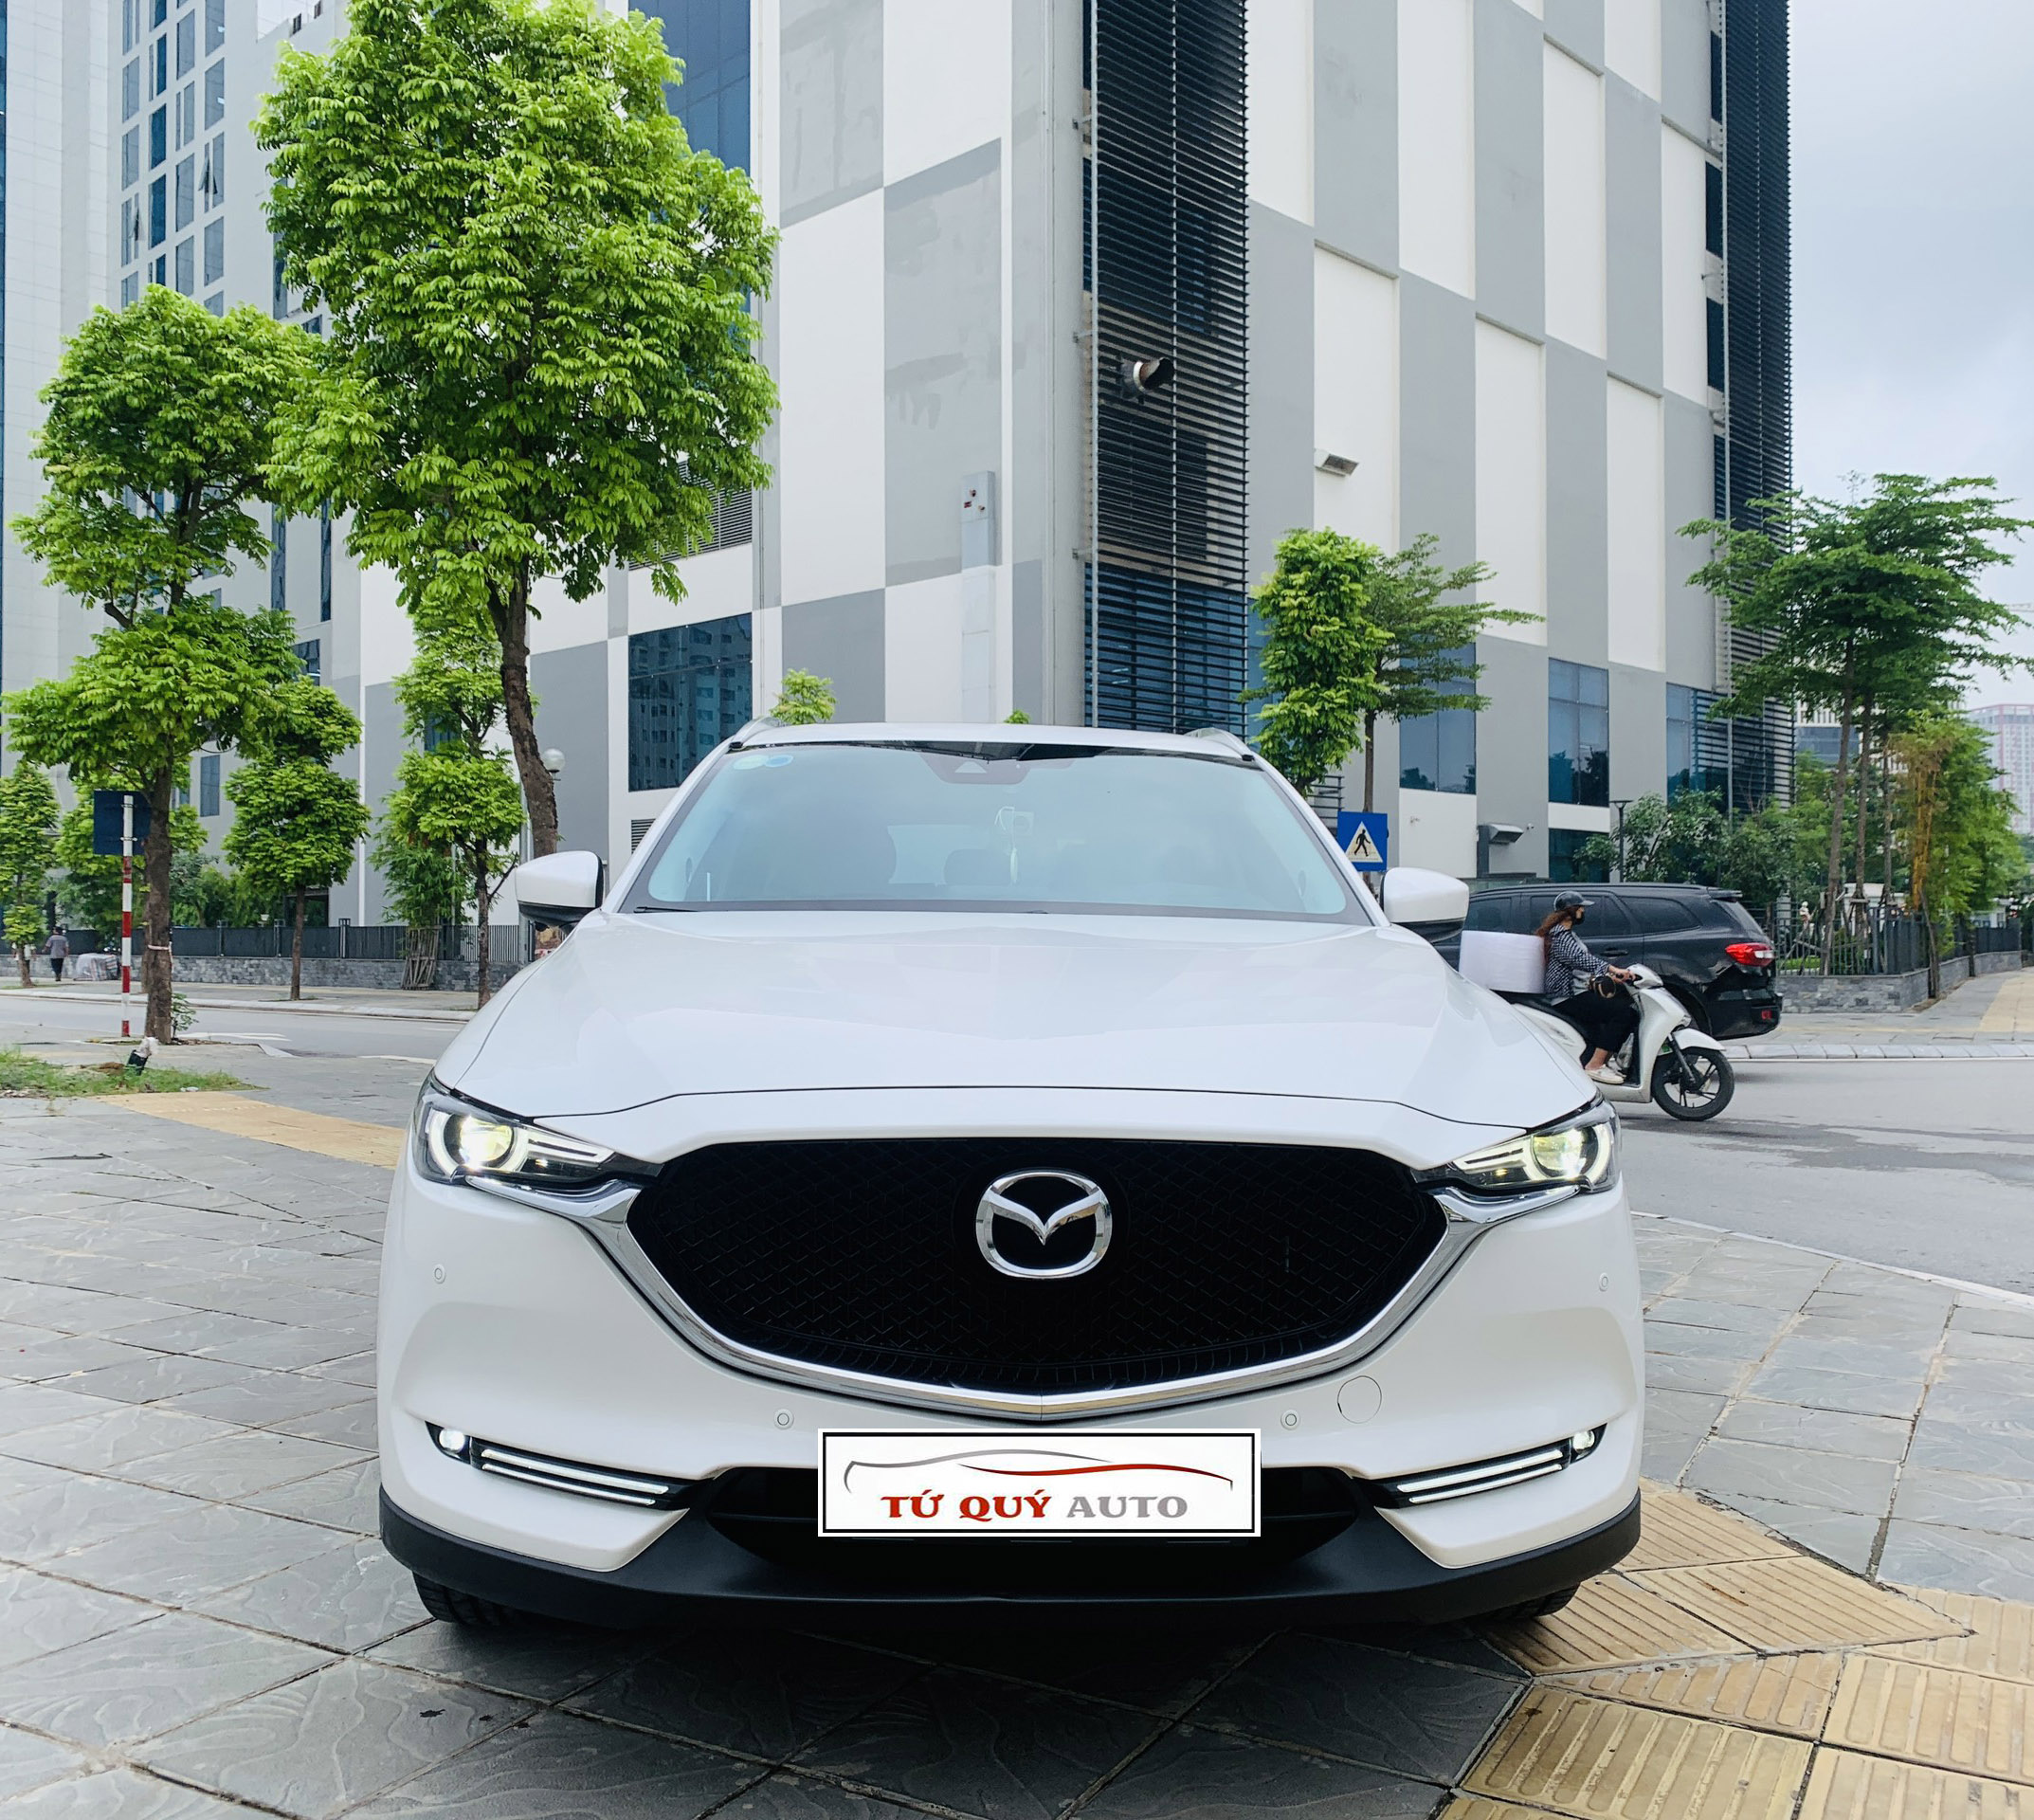 Mazda CX5 2020 bán tại Anh có giá từ 766 triệu đồng